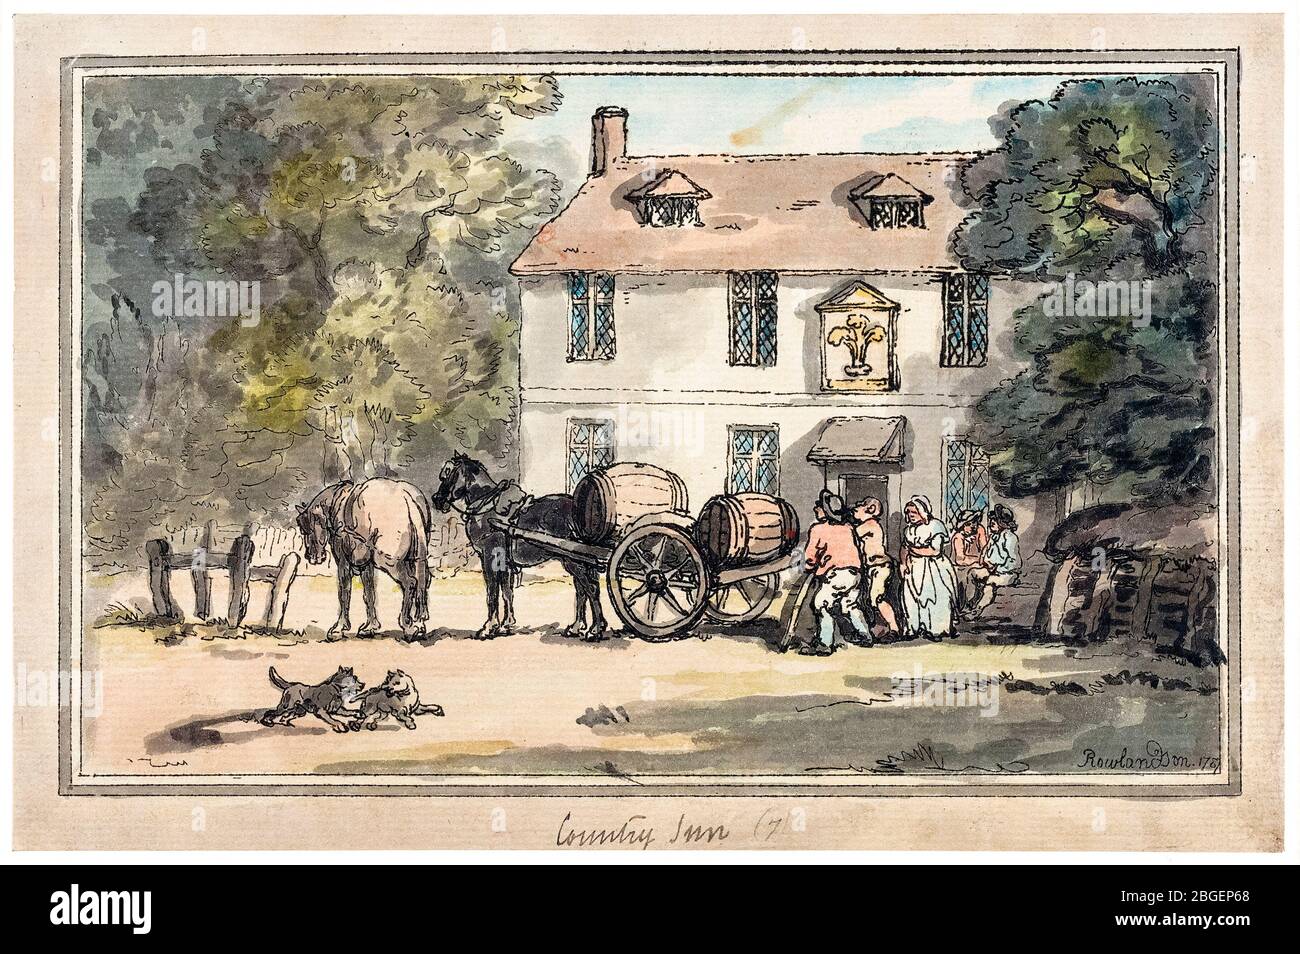 Thomas Rowlandson, Country Inn, print, 1787 Stock Photo